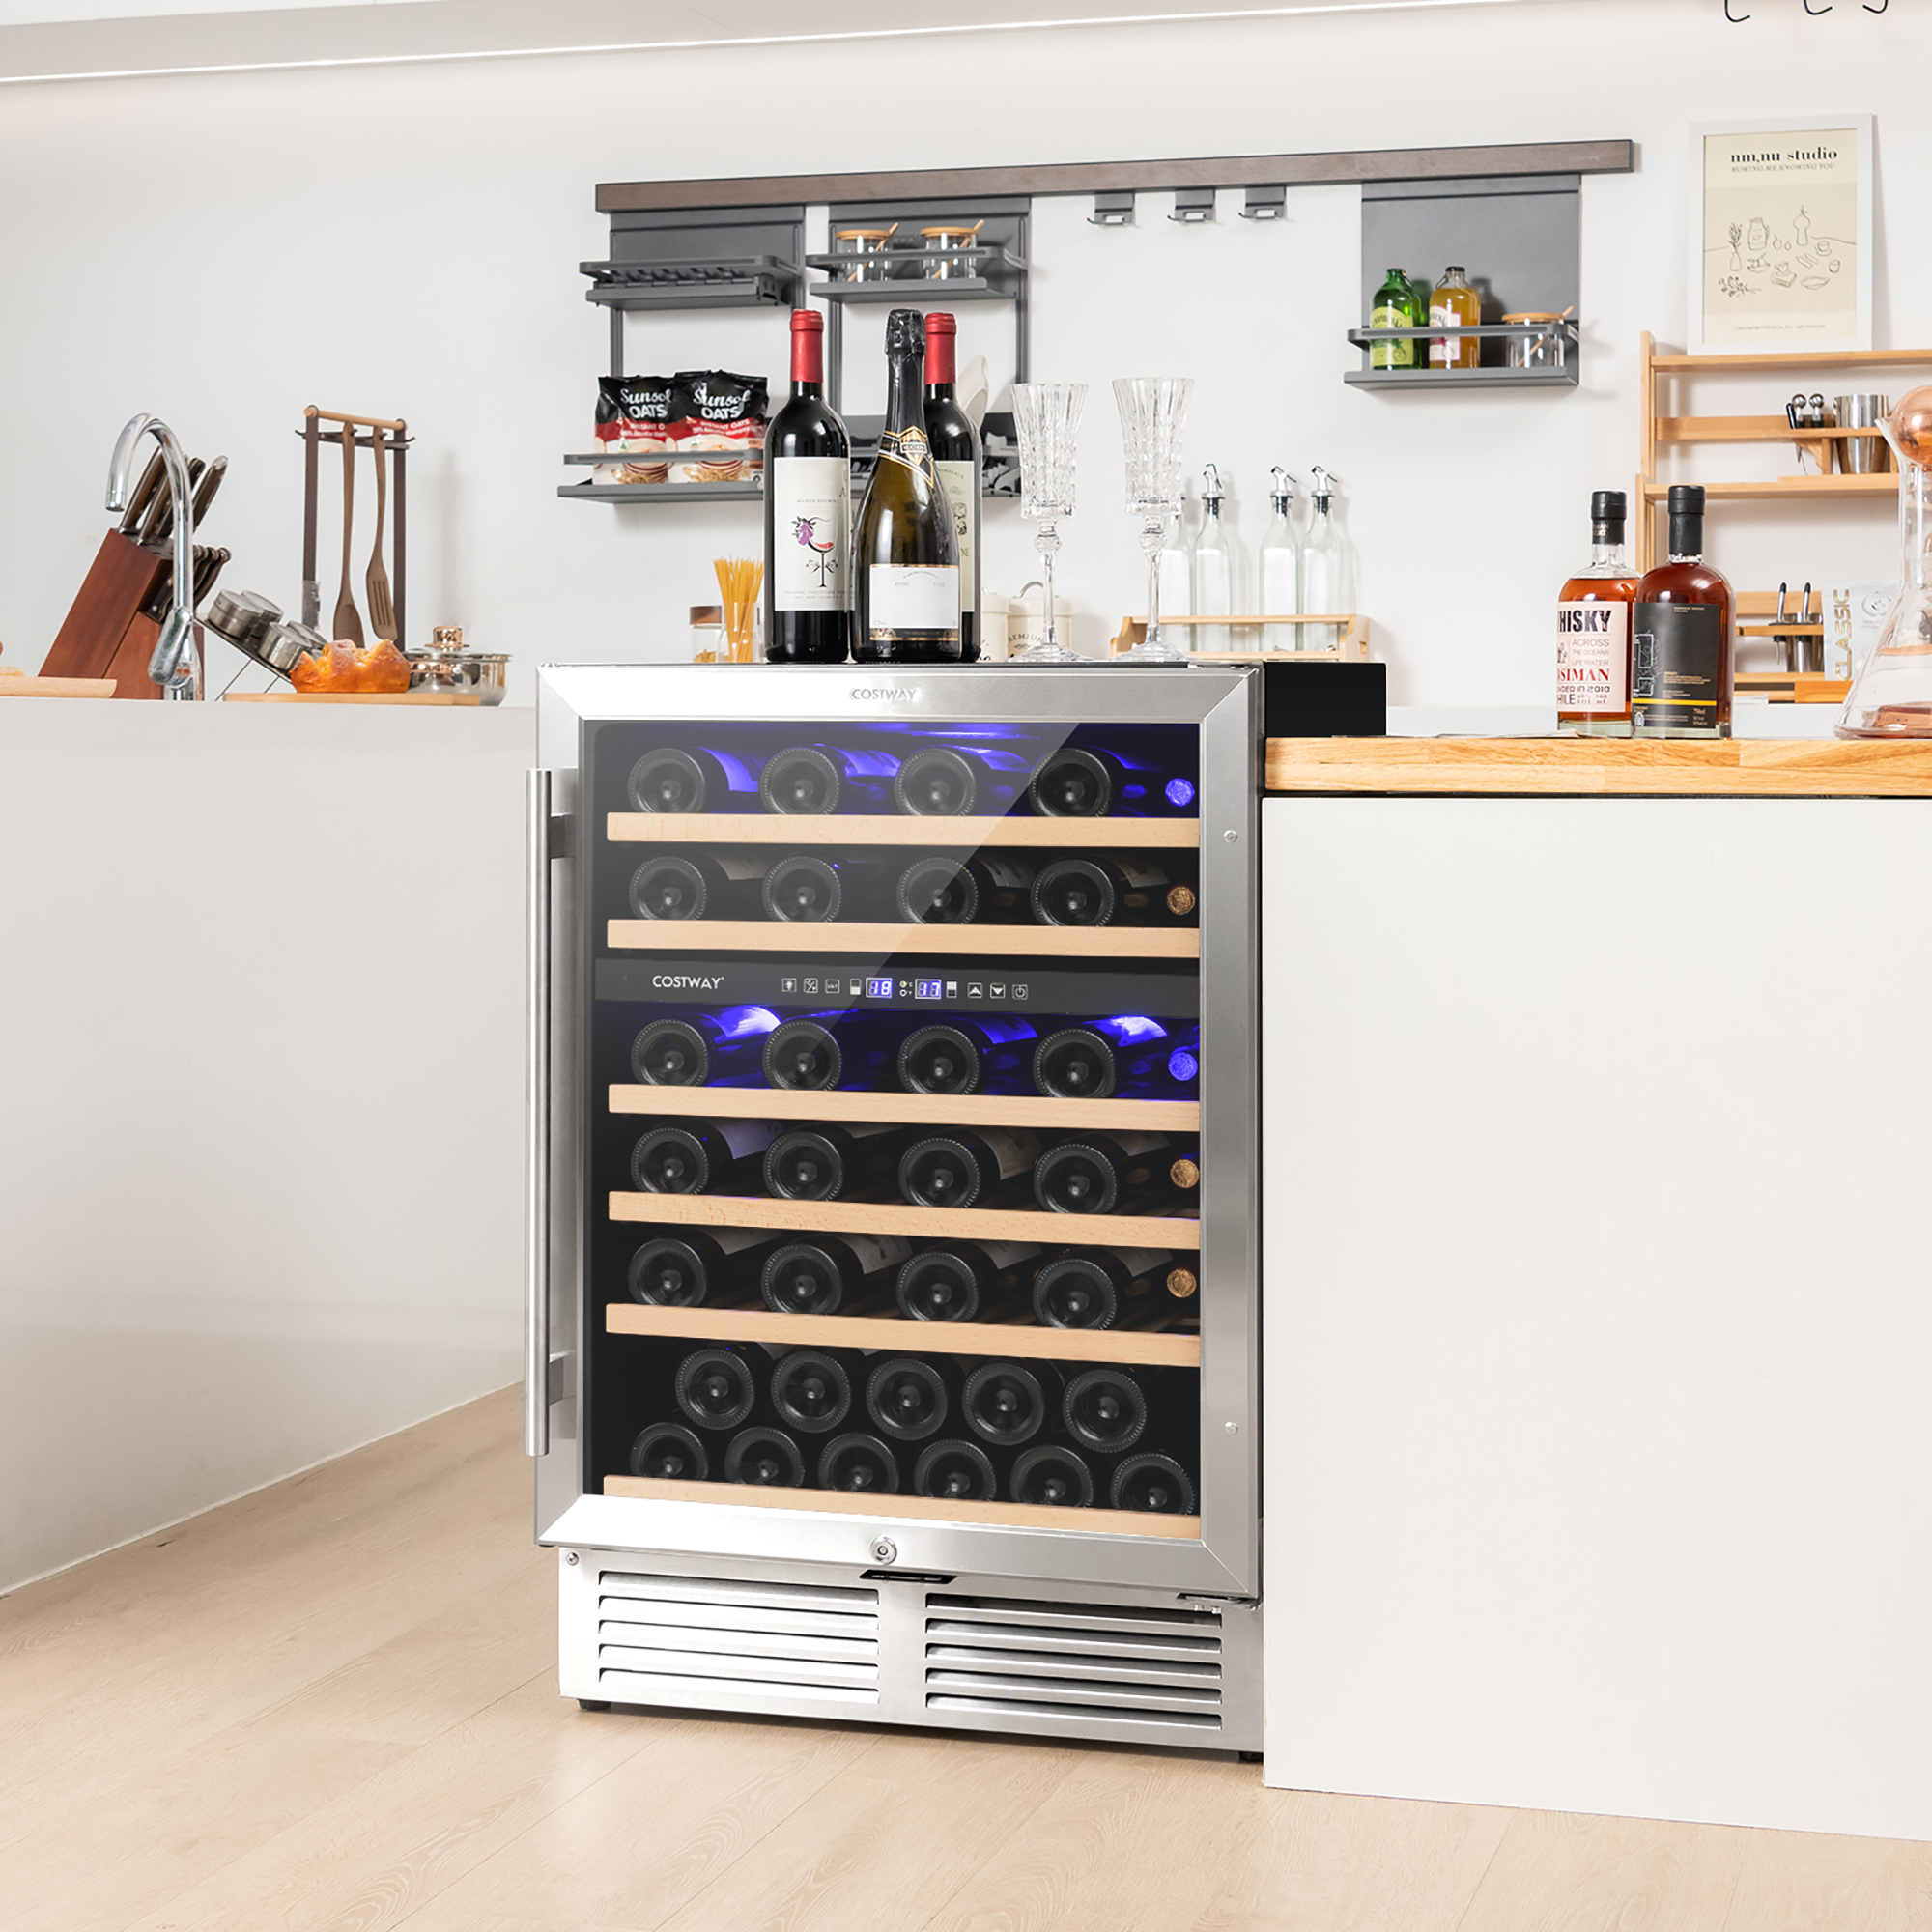 Costway 24 Inch Wine Cooler 51 Bottles Dual Zone Wine Refrigerator Built-In Freestanding